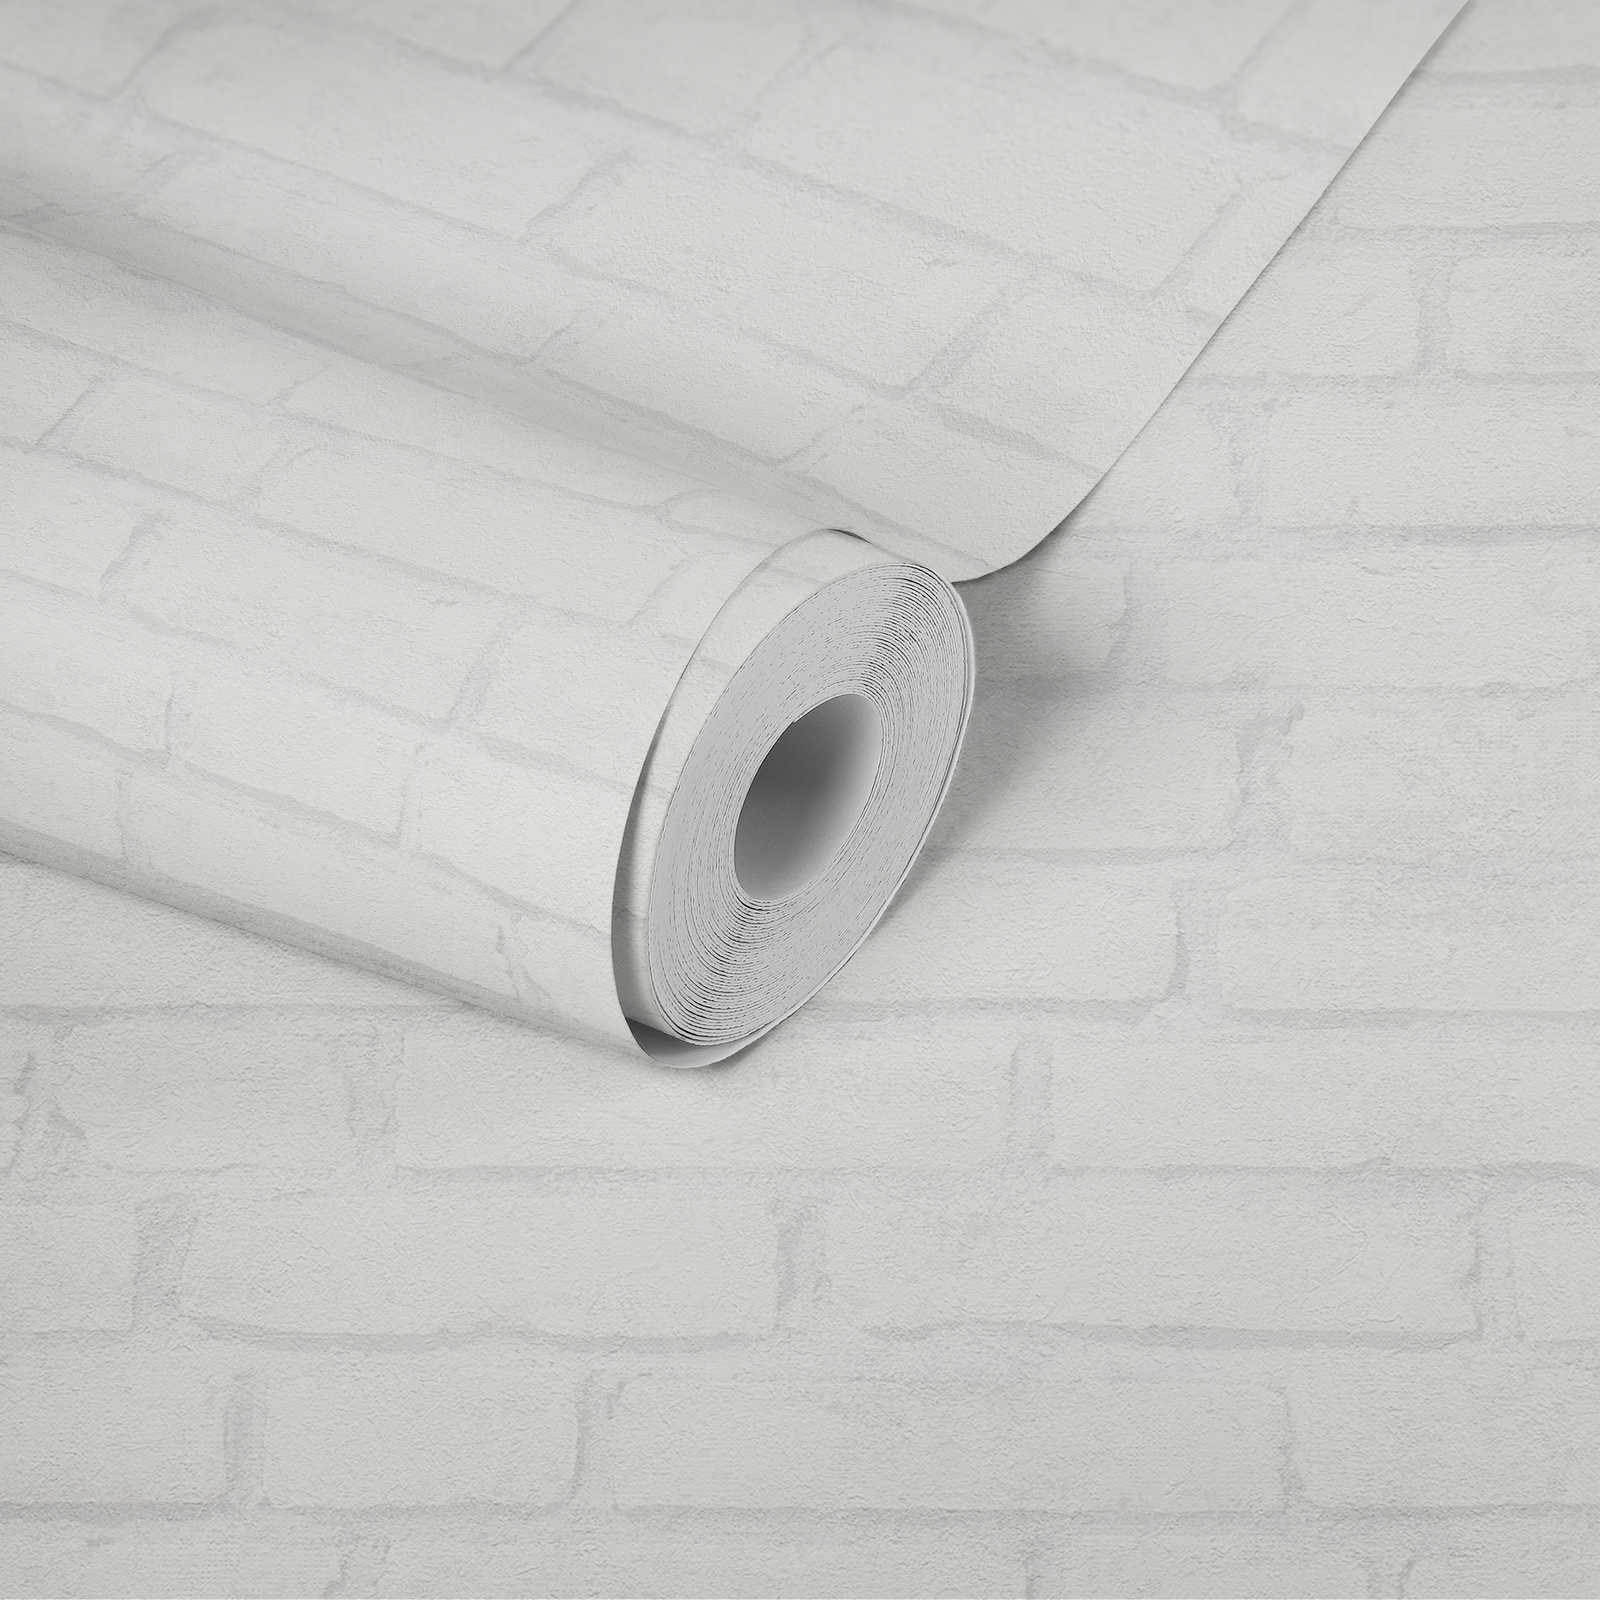             Helle Steintapete Ziegel-Muster im Industrial Design – Weiß, Grau
        